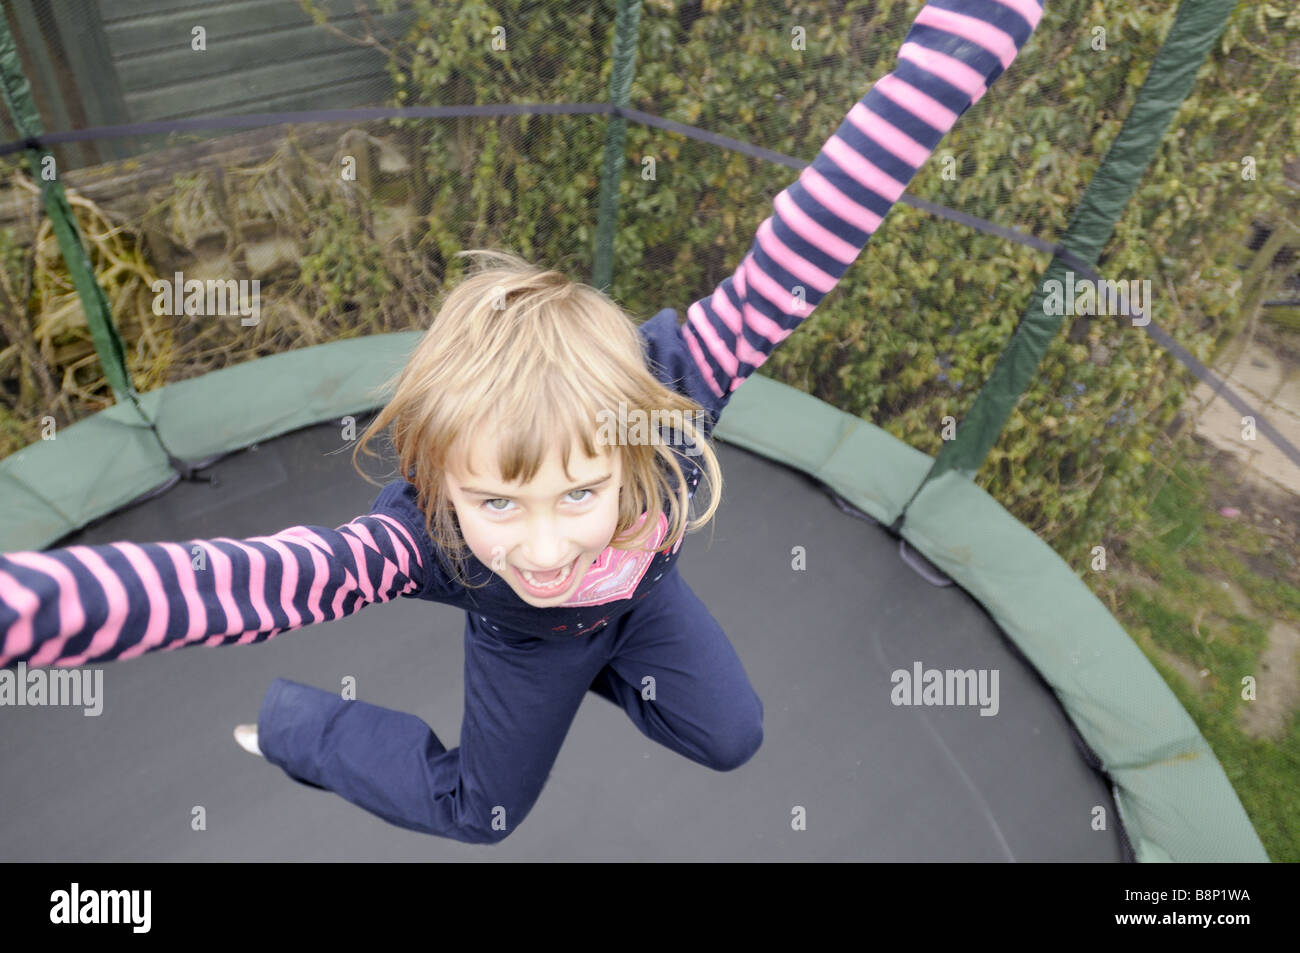 Une fillette de six ans de rebondir sur un trampoline Banque D'Images